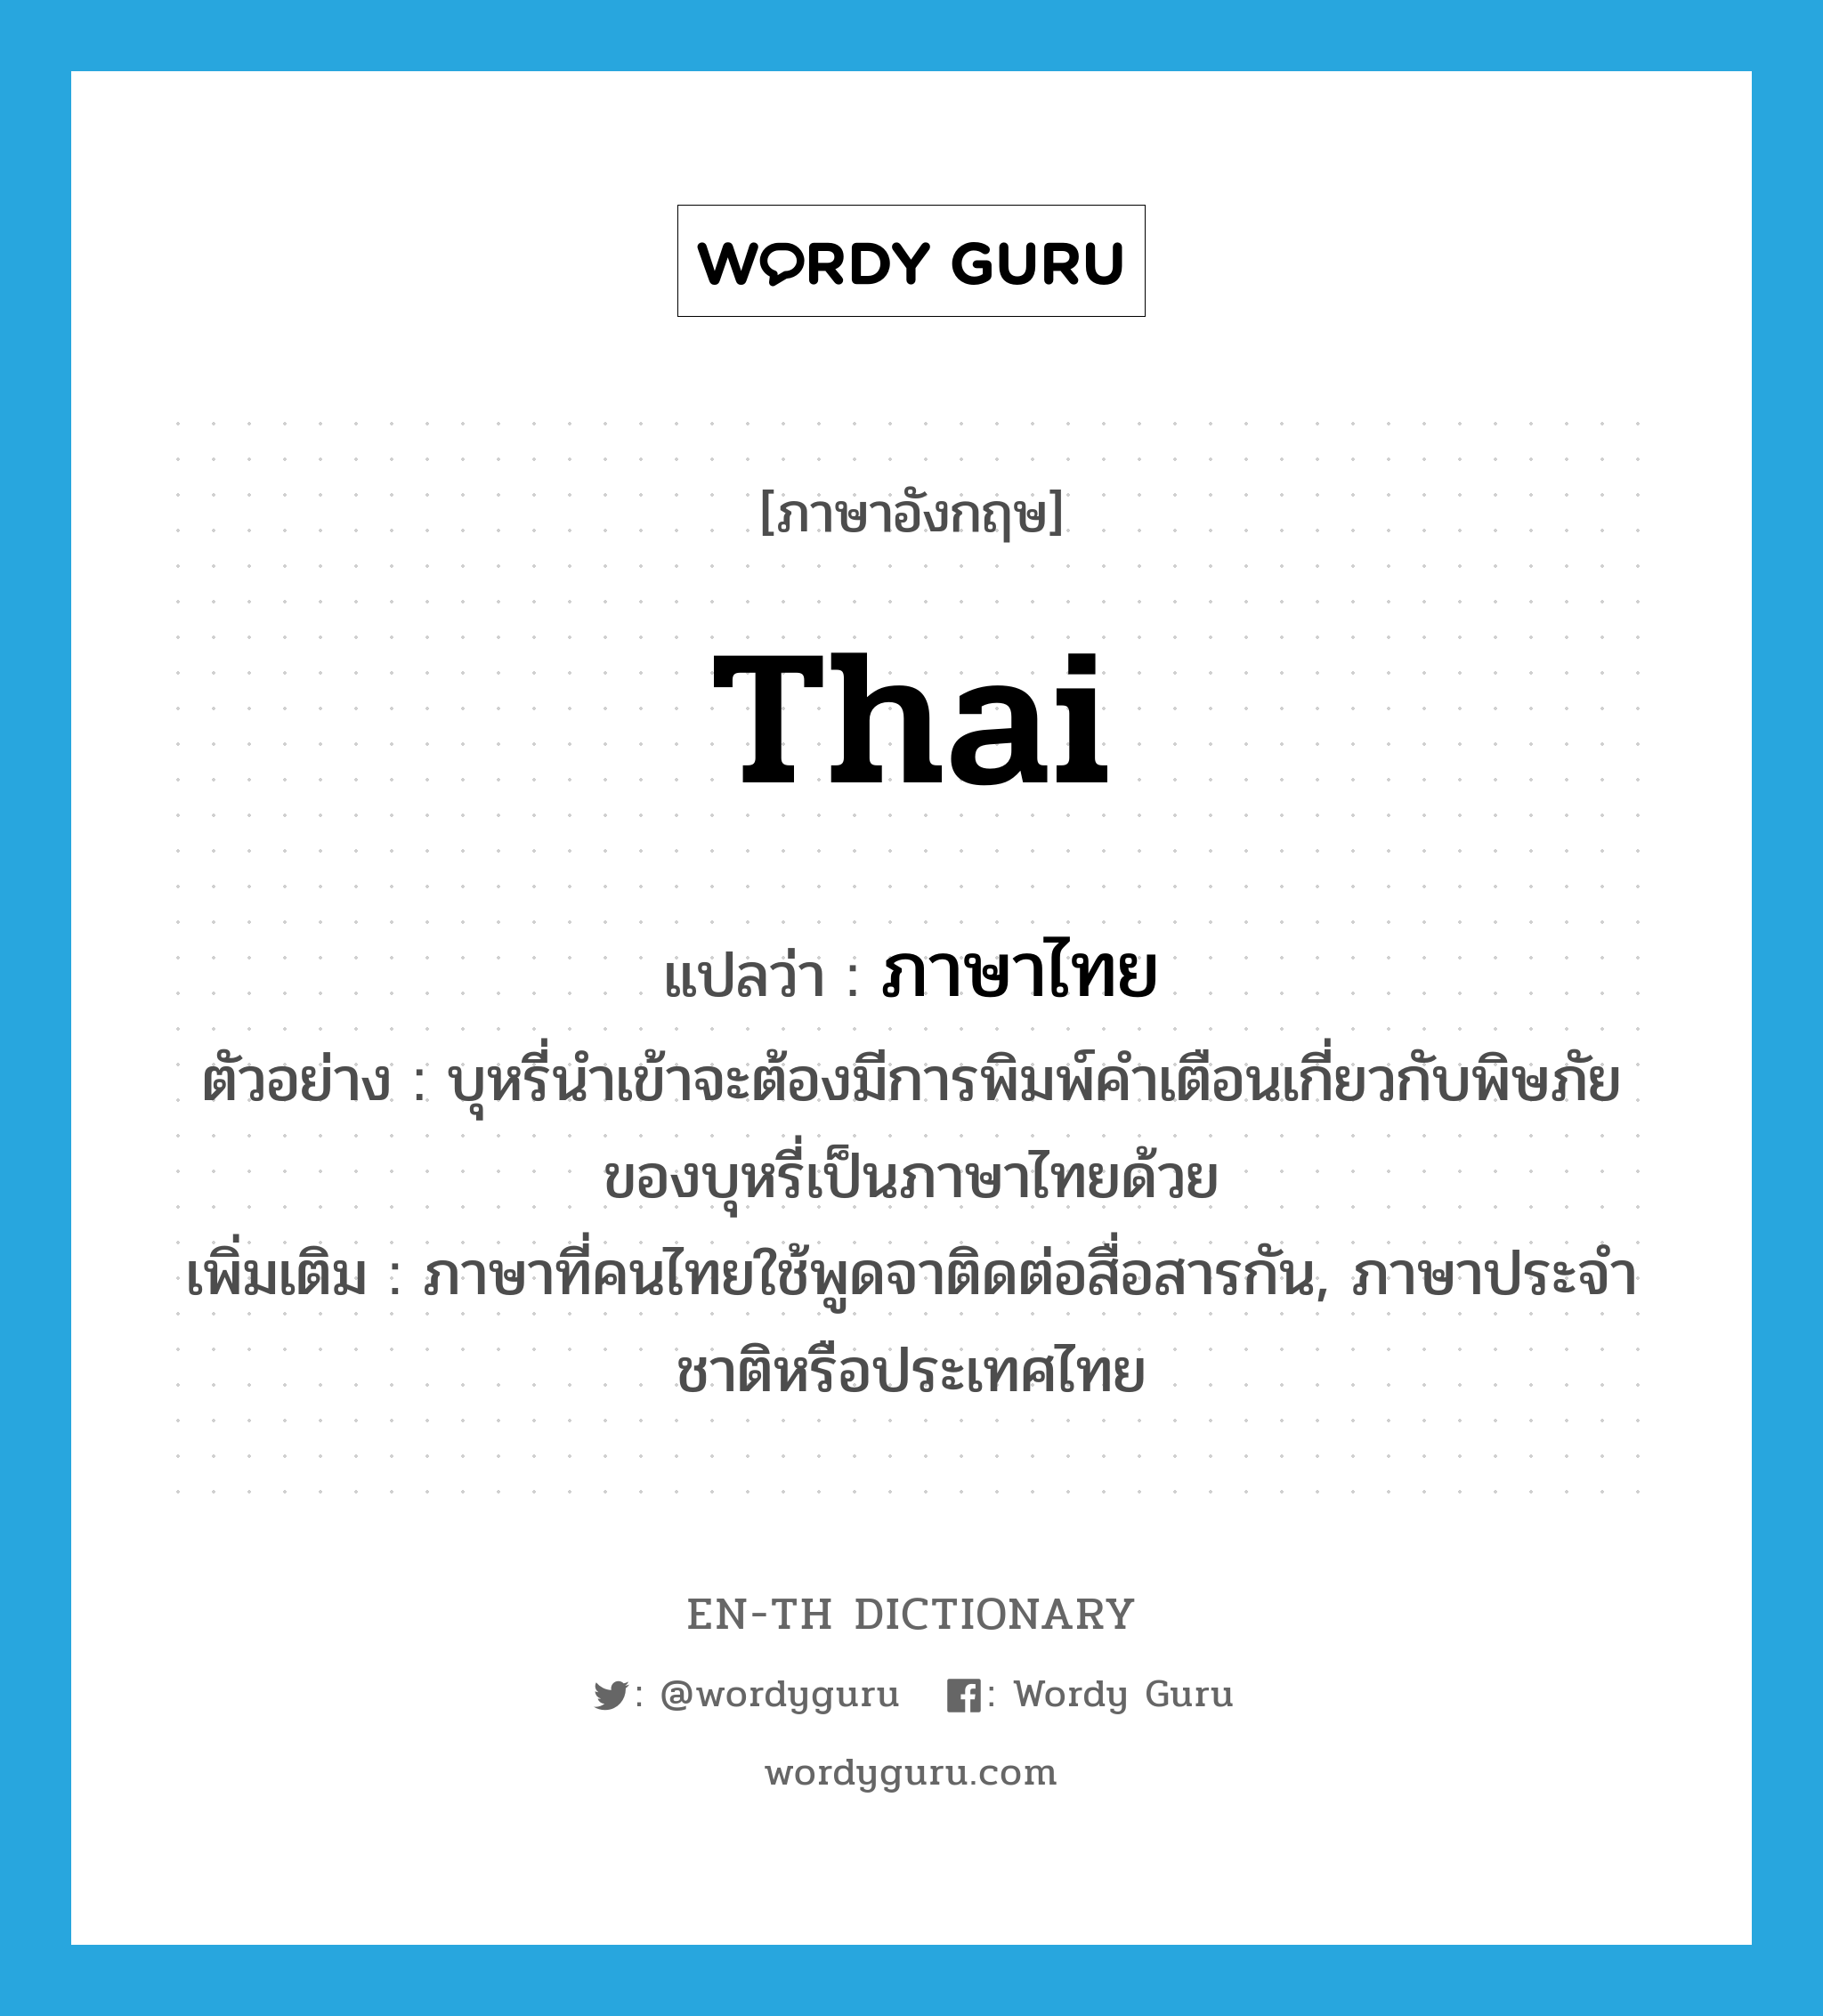 Thai แปลว่า?, คำศัพท์ภาษาอังกฤษ Thai แปลว่า ภาษาไทย ประเภท N ตัวอย่าง บุหรี่นำเข้าจะต้องมีการพิมพ์คำเตือนเกี่ยวกับพิษภัยของบุหรี่เป็นภาษาไทยด้วย เพิ่มเติม ภาษาที่คนไทยใช้พูดจาติดต่อสื่อสารกัน, ภาษาประจำชาติหรือประเทศไทย หมวด N